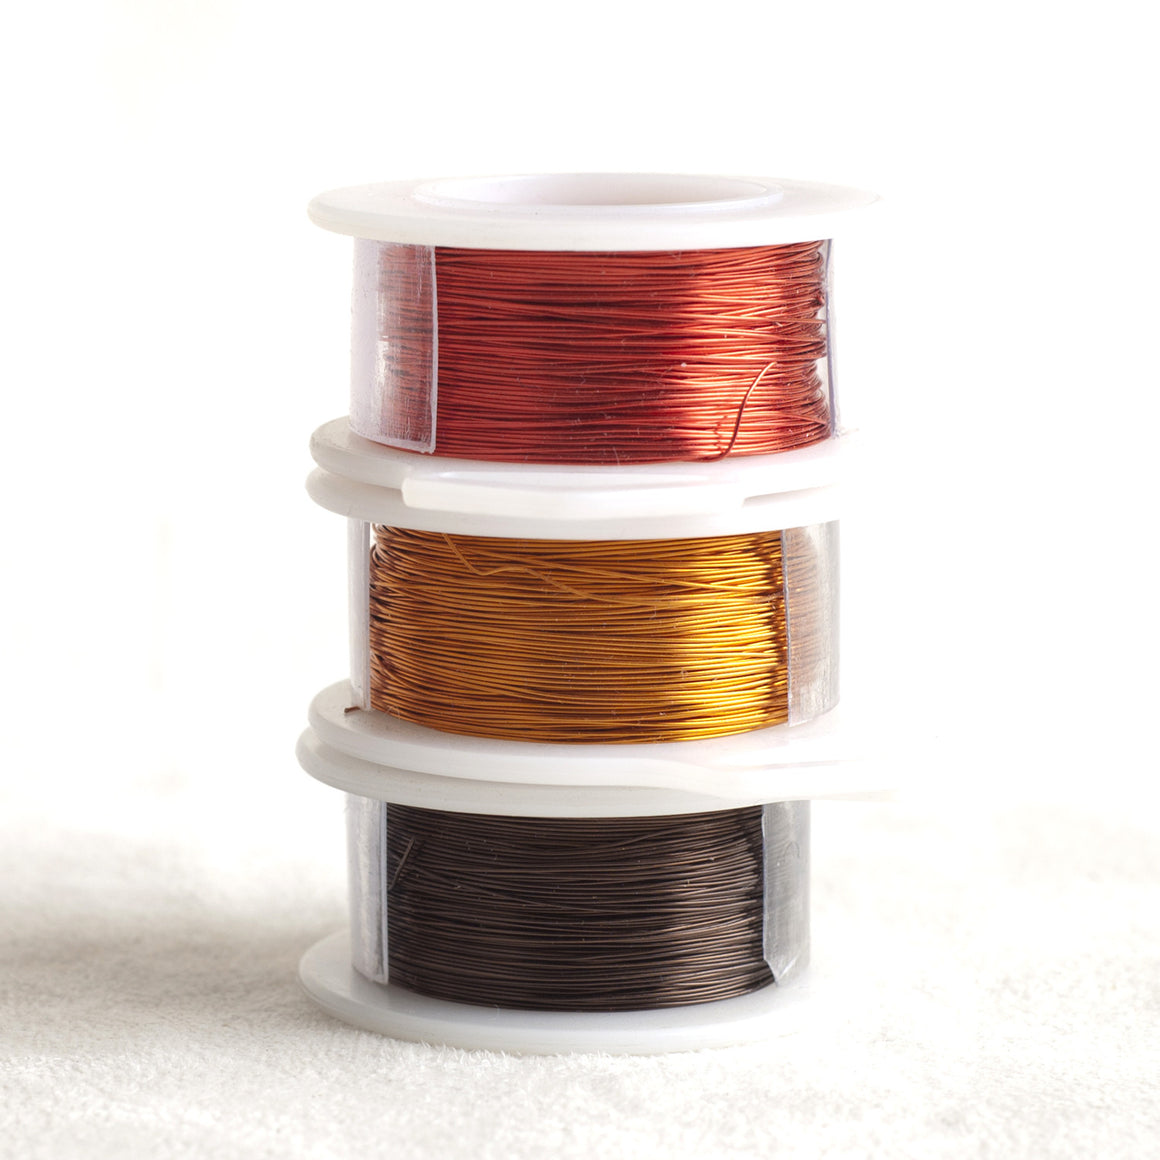 Color wire, artistic wire for wire crochet - EARTH E2, E4, C6 - Yooladesign